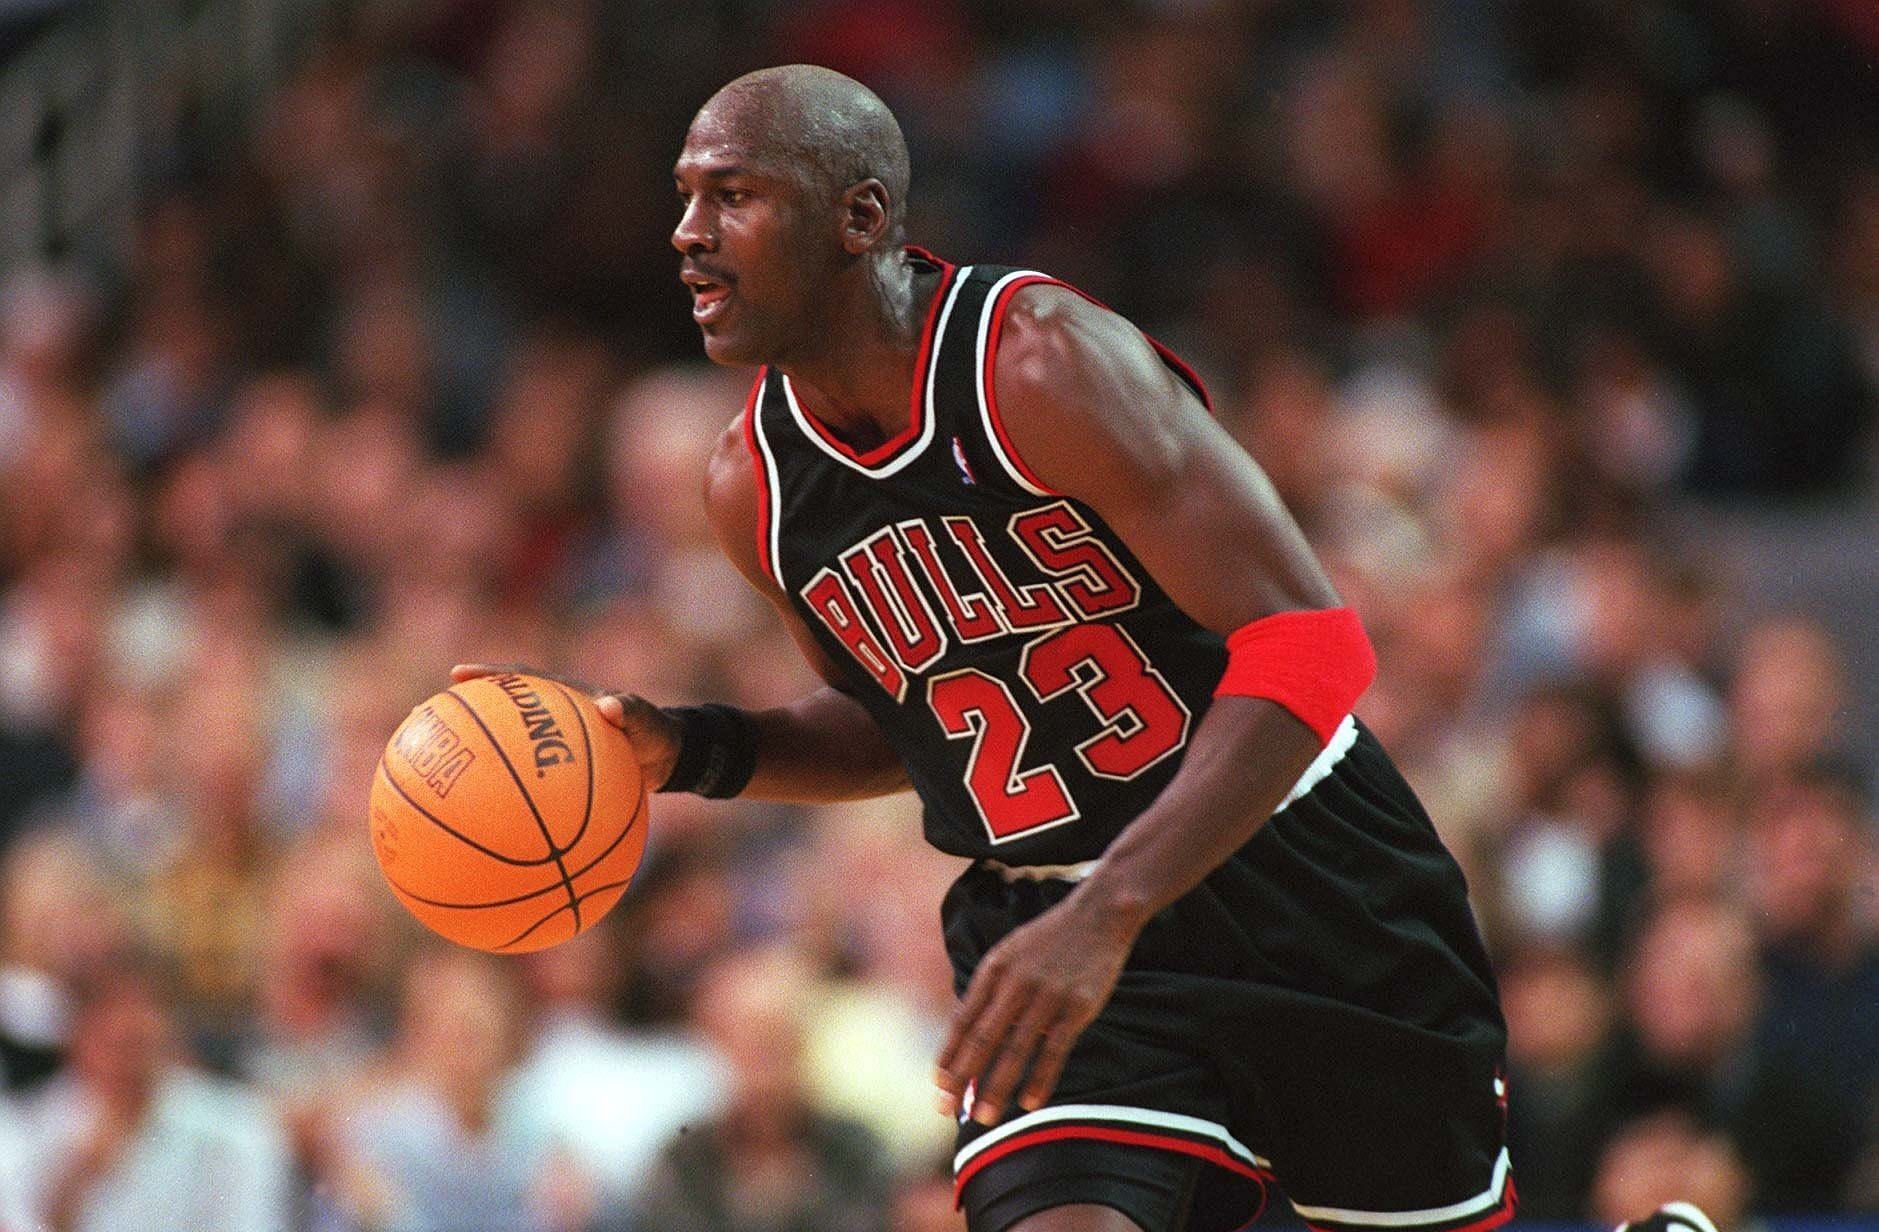 Michael Jordan during his prime NBA days